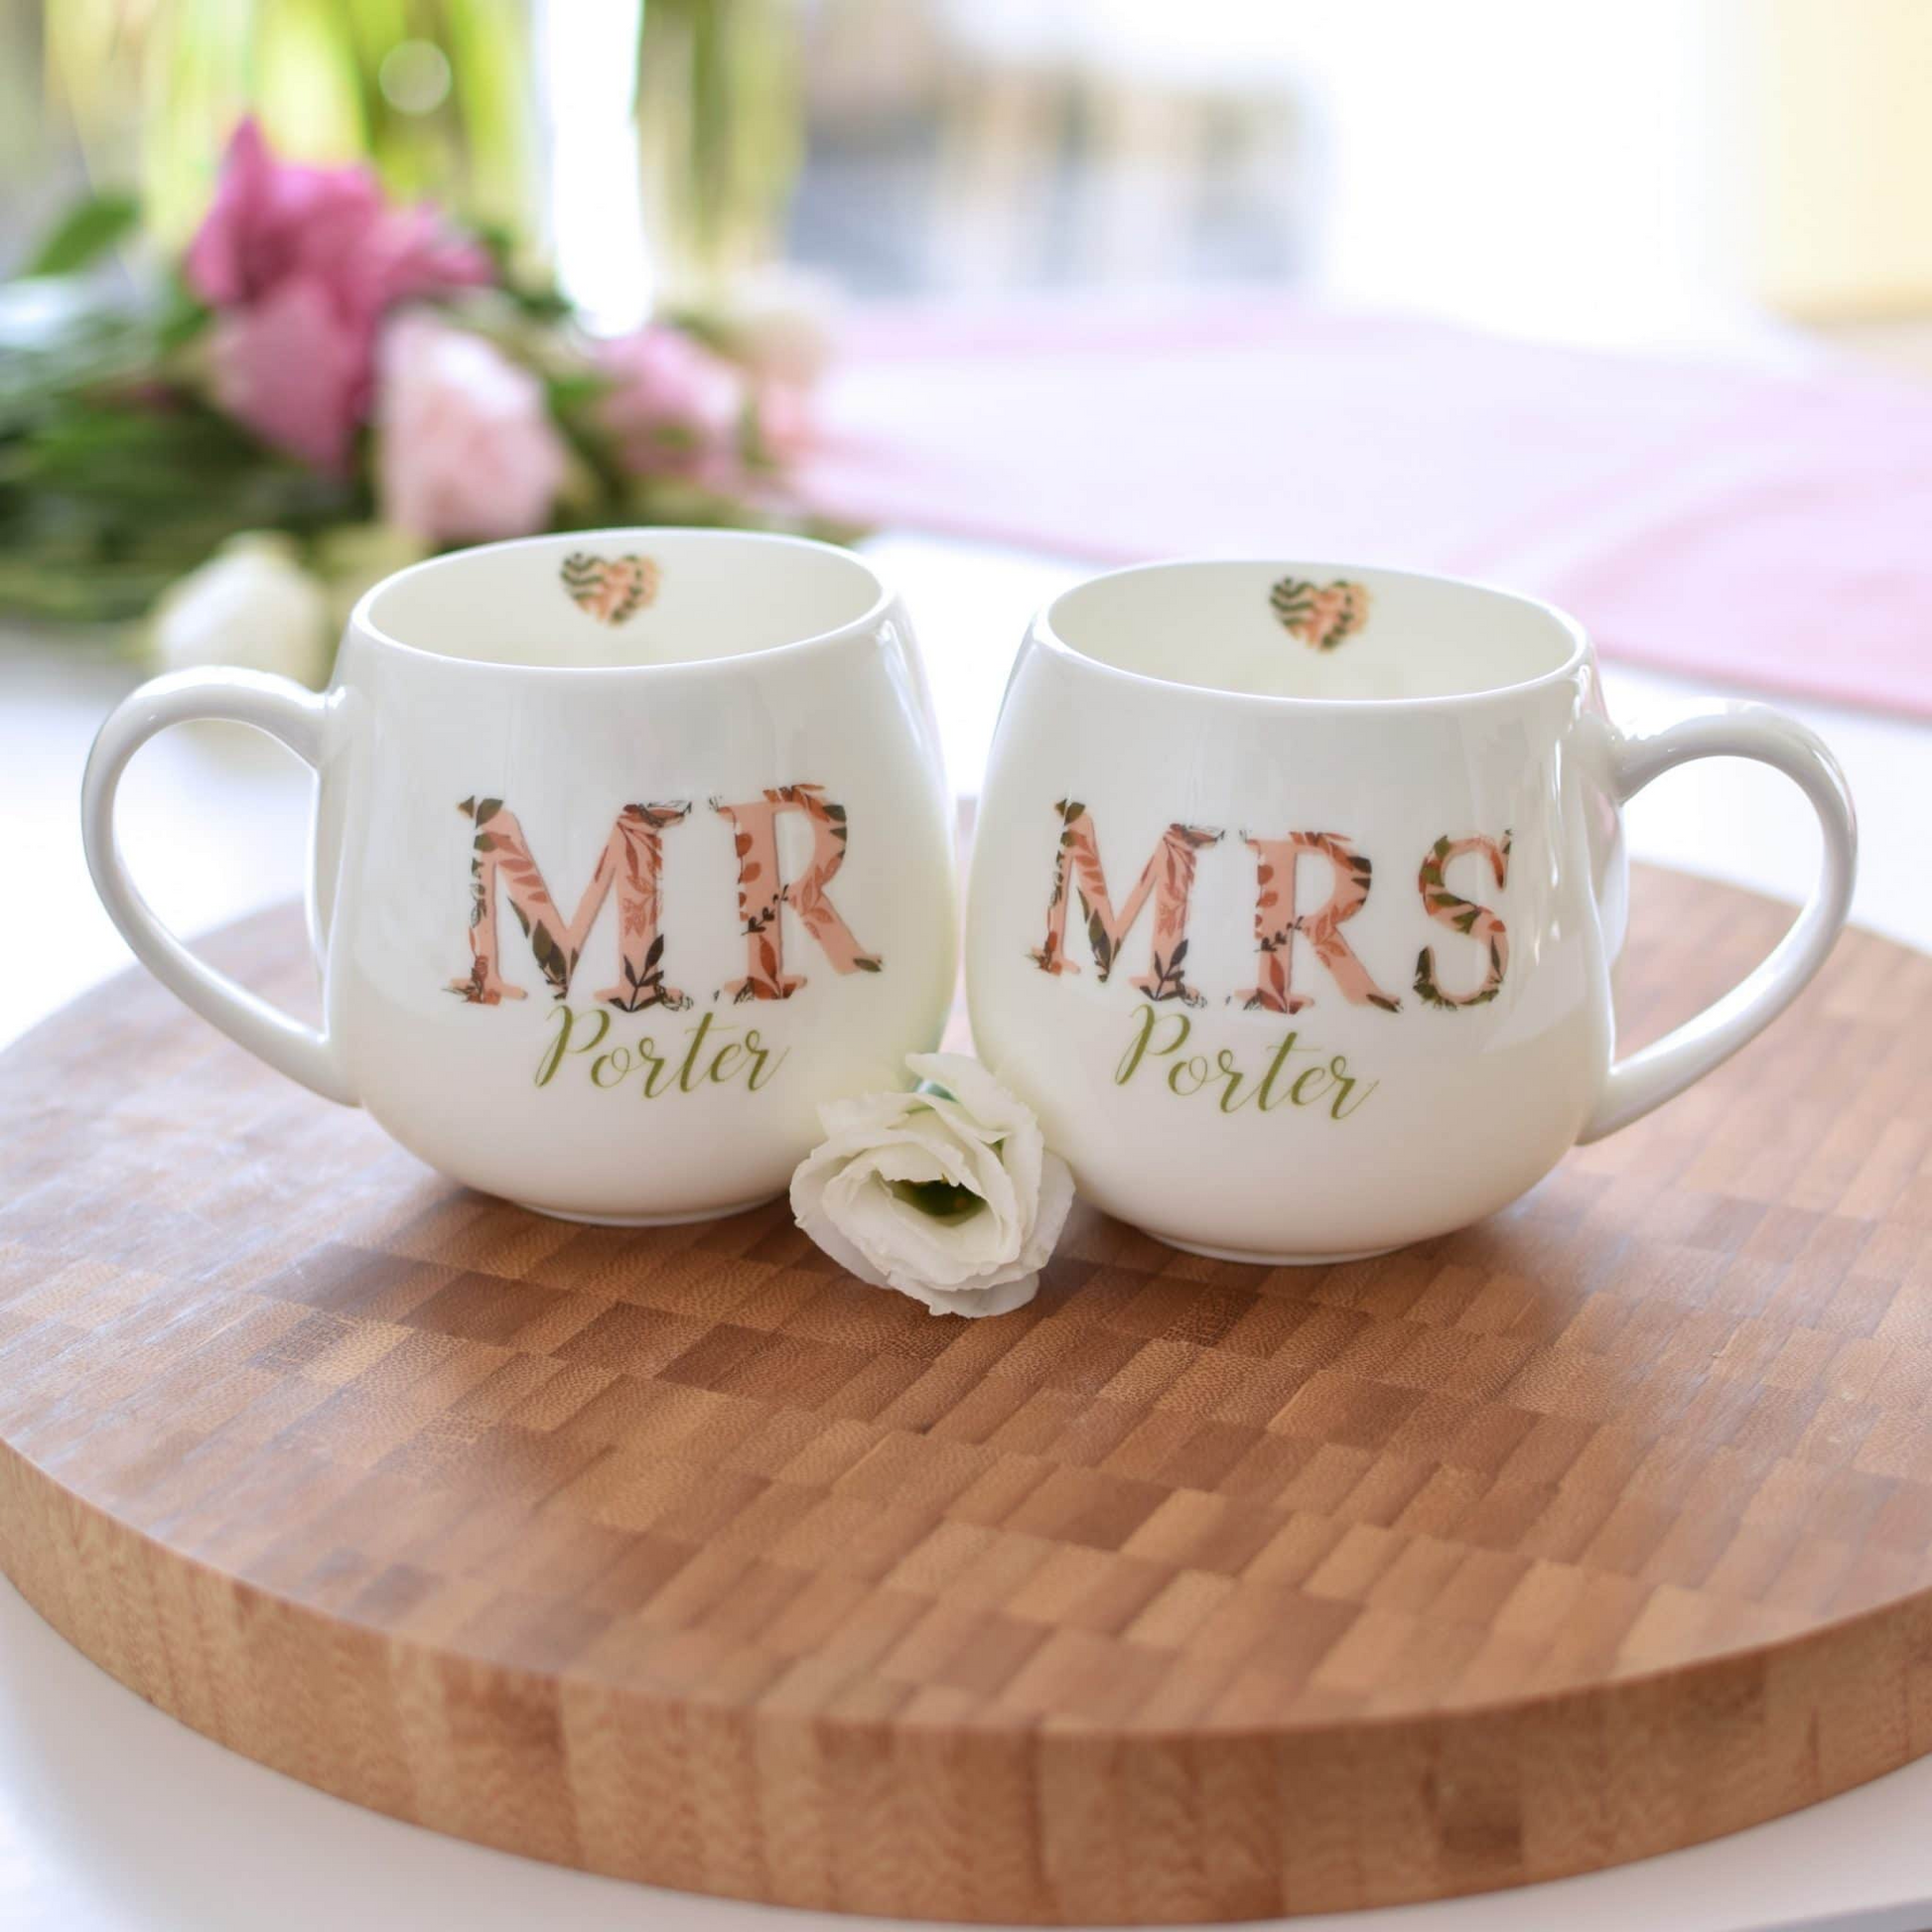 Personalised Autumnal Mr & Mrs Hug Mug Set